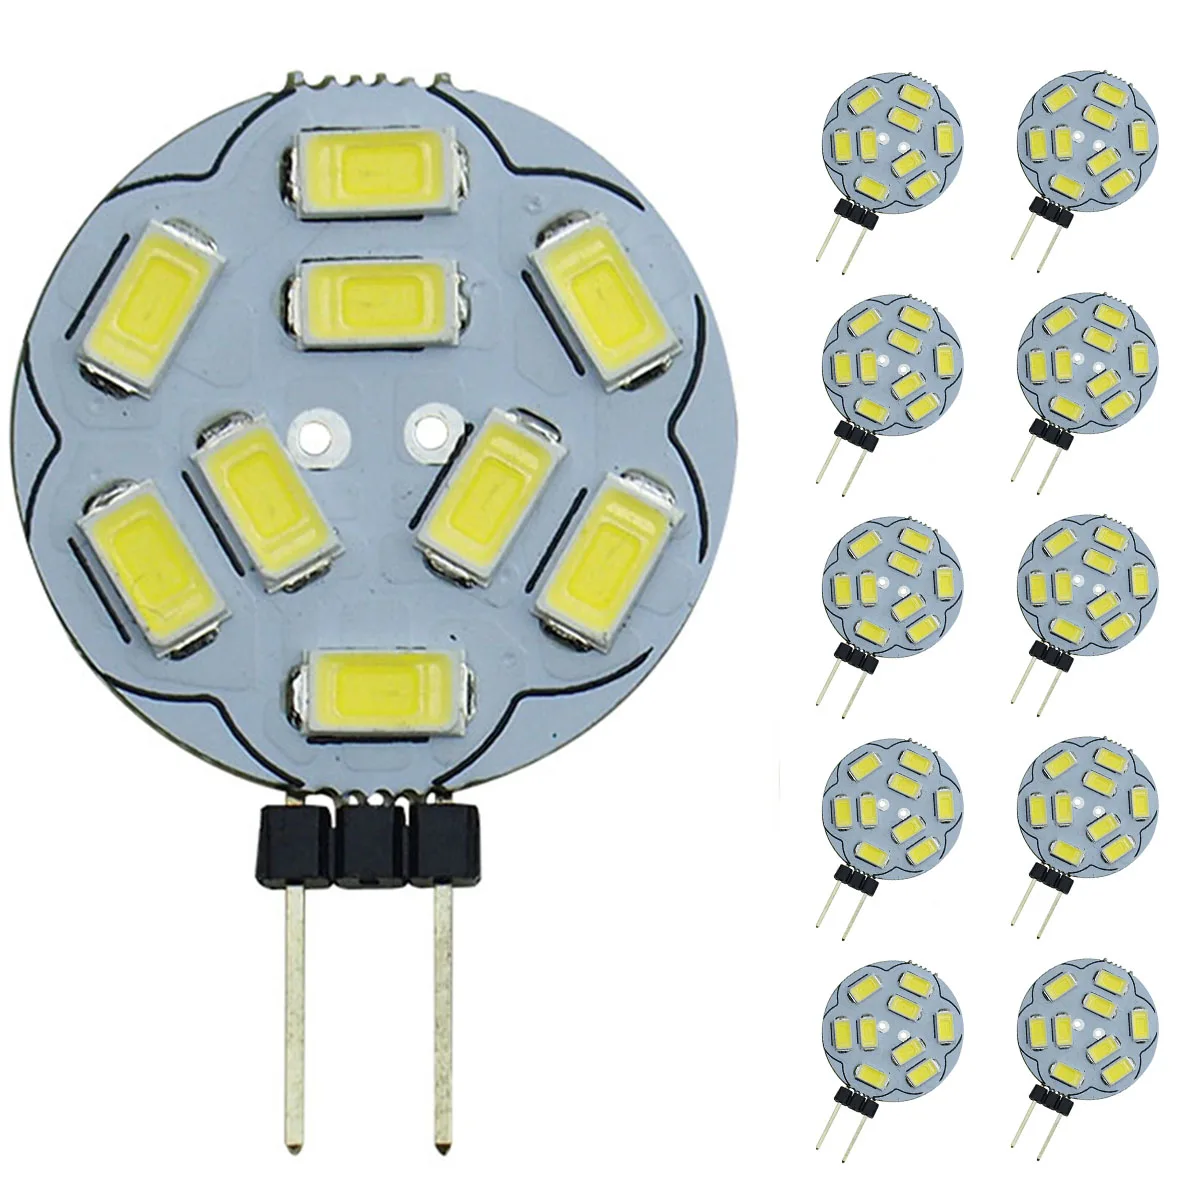 

10pcs / lots G4 LED Light Bulbs 9 SMD 5730 DC 12V G4 Bi-Pin Base AC LED Light Bulb Replacement Halogen Bulb 20W,Cool White 6000K